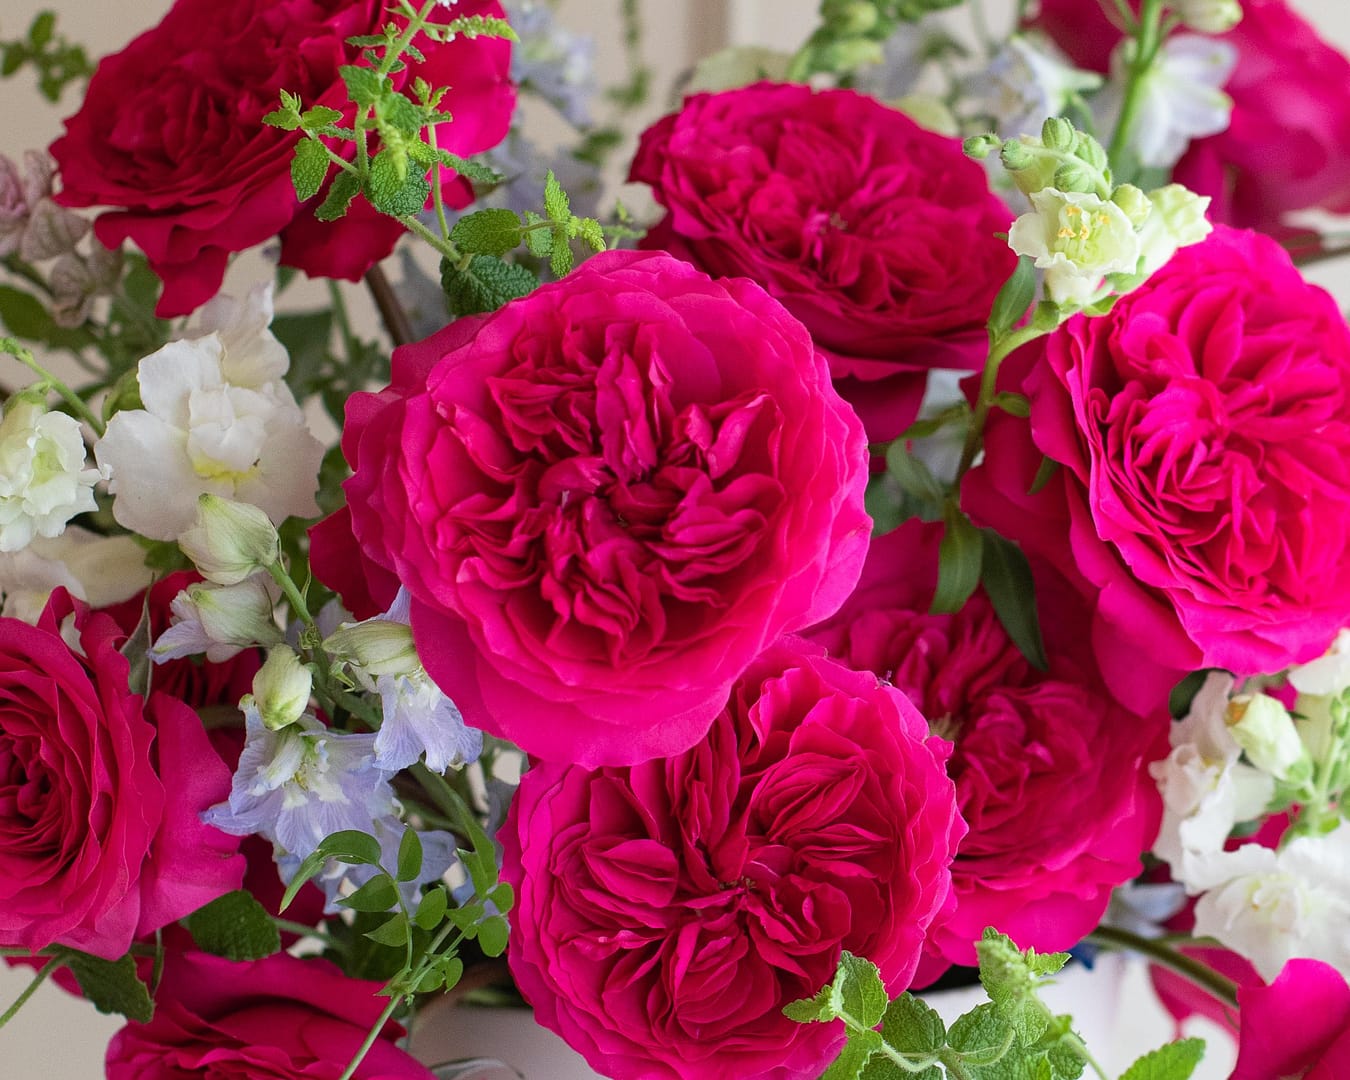 Los impresionantes ramos de rosas rosas para novia que te enamorarán